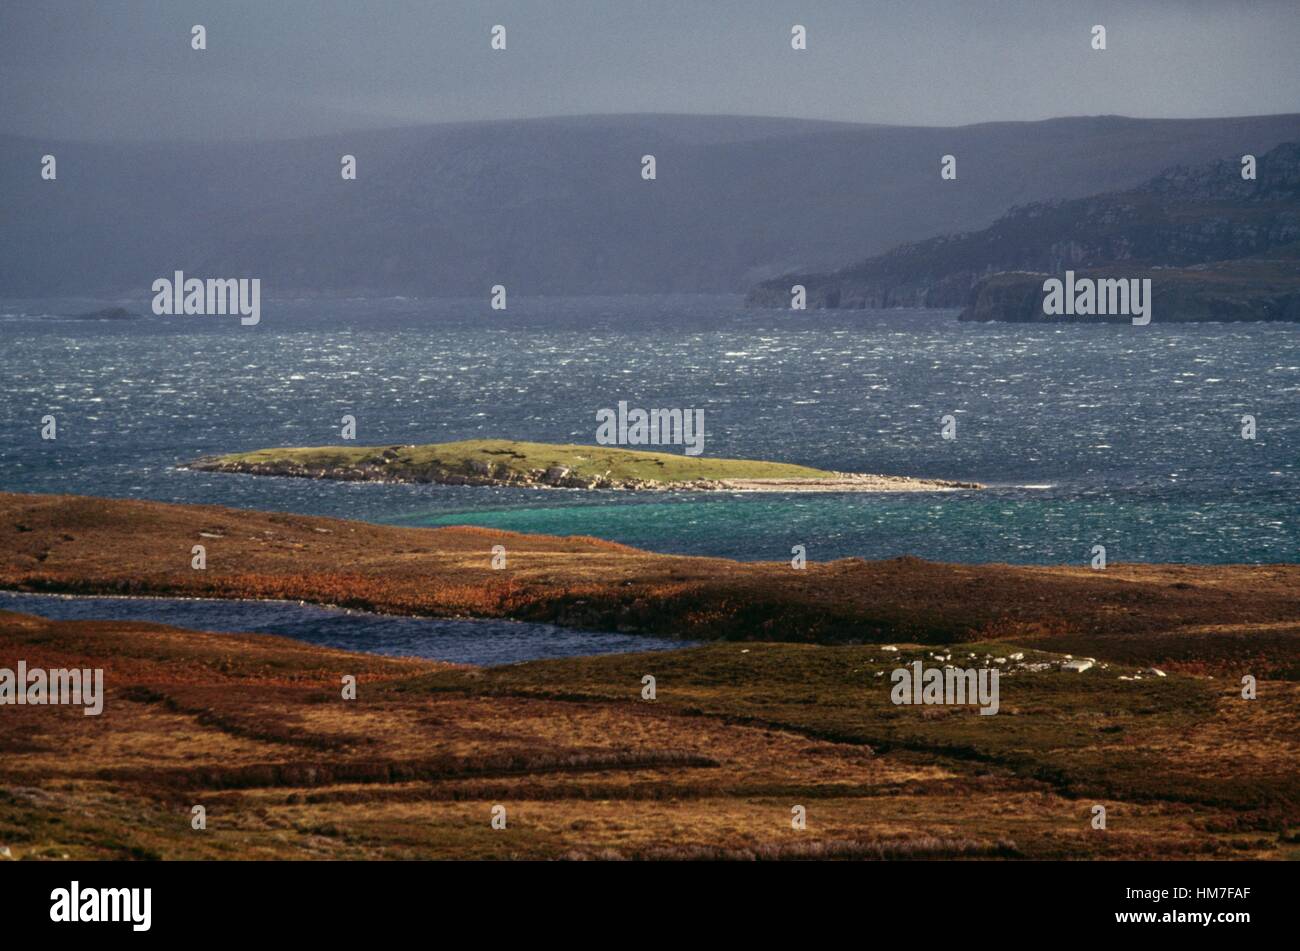 Bandes de terre fait saillie dans le Loch Eriboll (Lac), Ecosse, Royaume-Uni. Banque D'Images